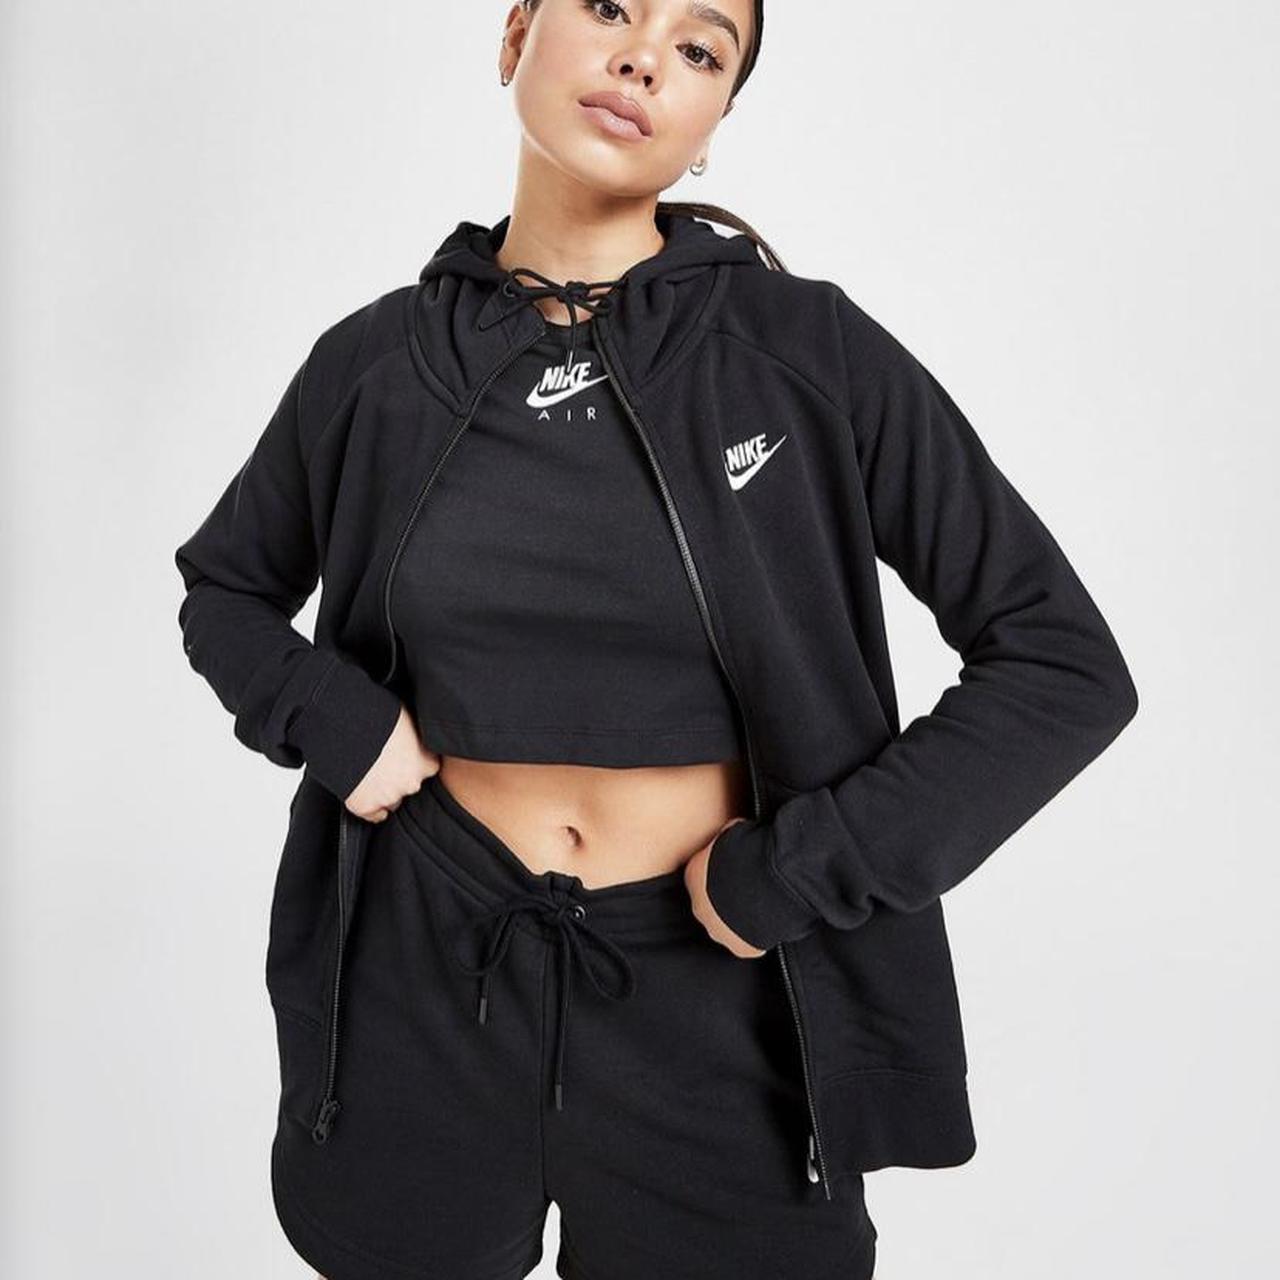 Womens vintage black Nike logo zip hoodie. Size M,... - Depop